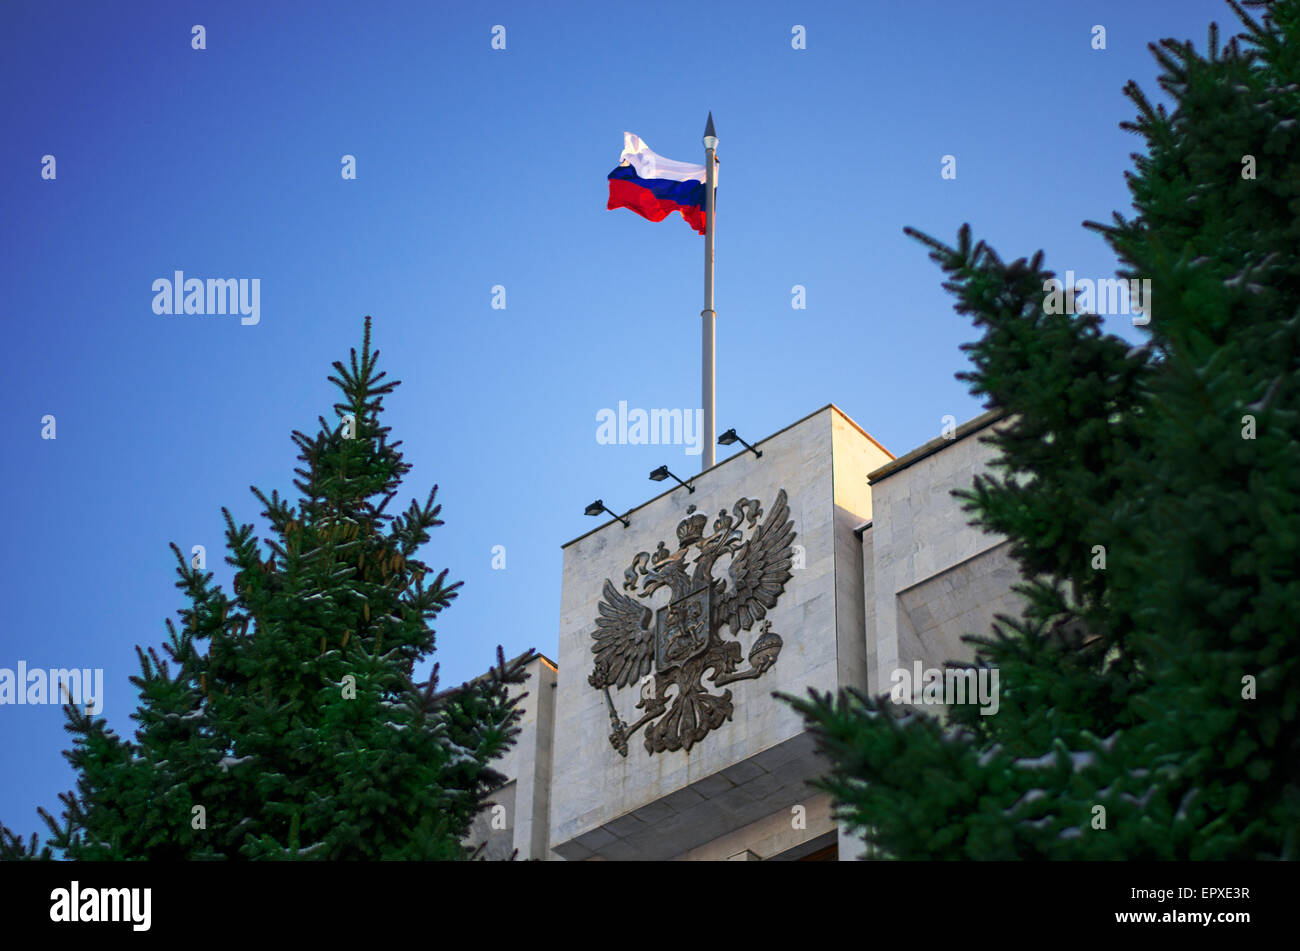 Drapeau de la Russie et de l'état de la Russie des symboles Banque D'Images